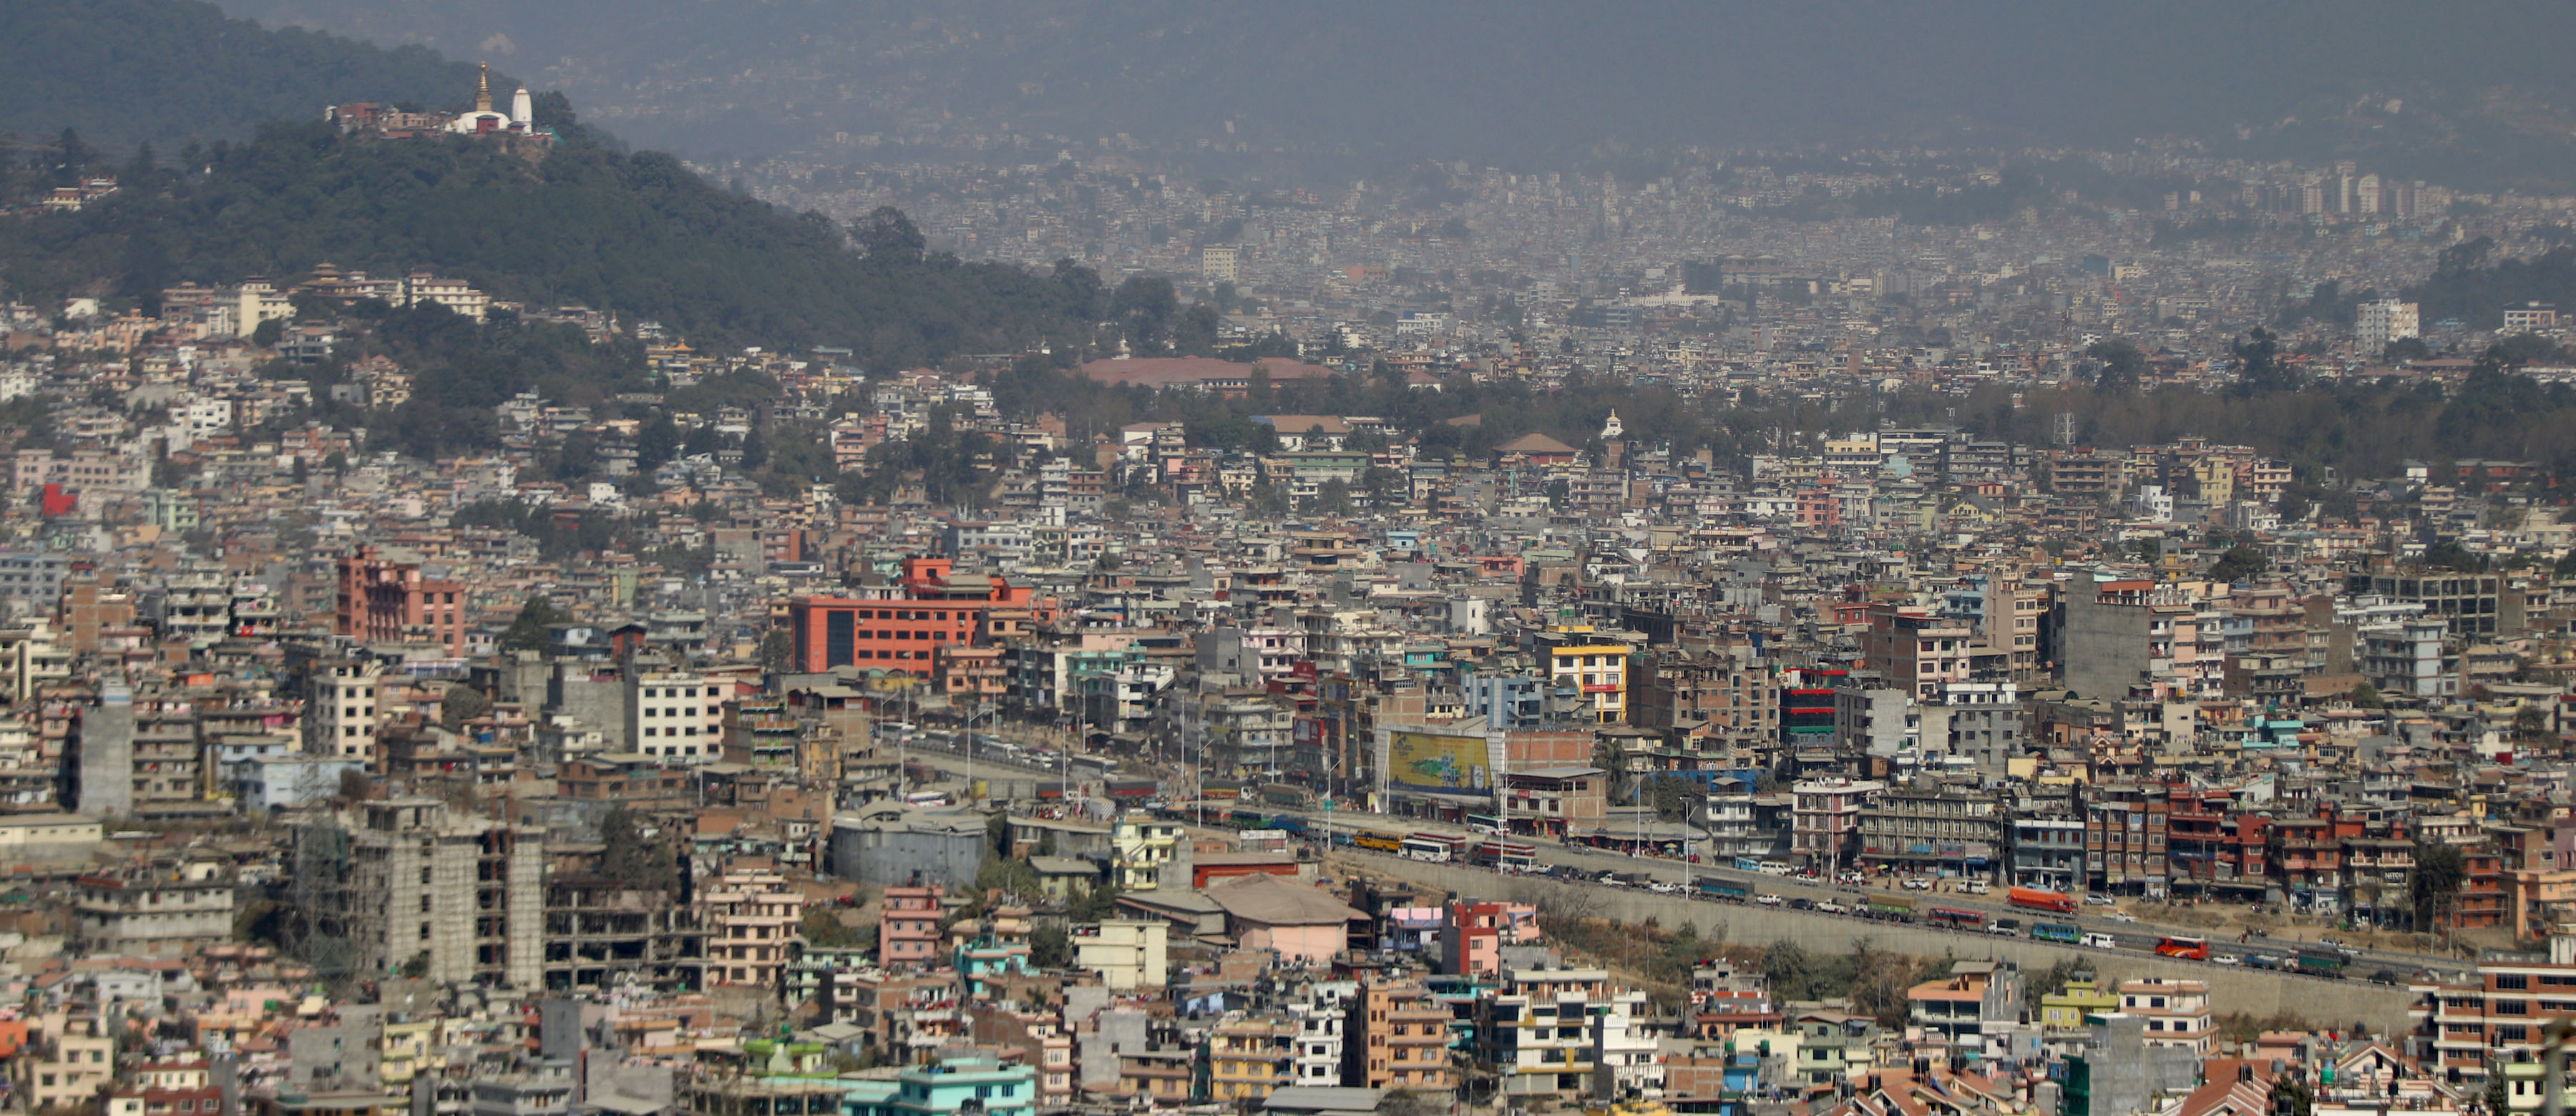 चारवटा प्रदेशमा वर्षाको सम्भावना, काठमाडौंमा २ बजेपछि पानी पर्न सक्छ : मौसमविद्